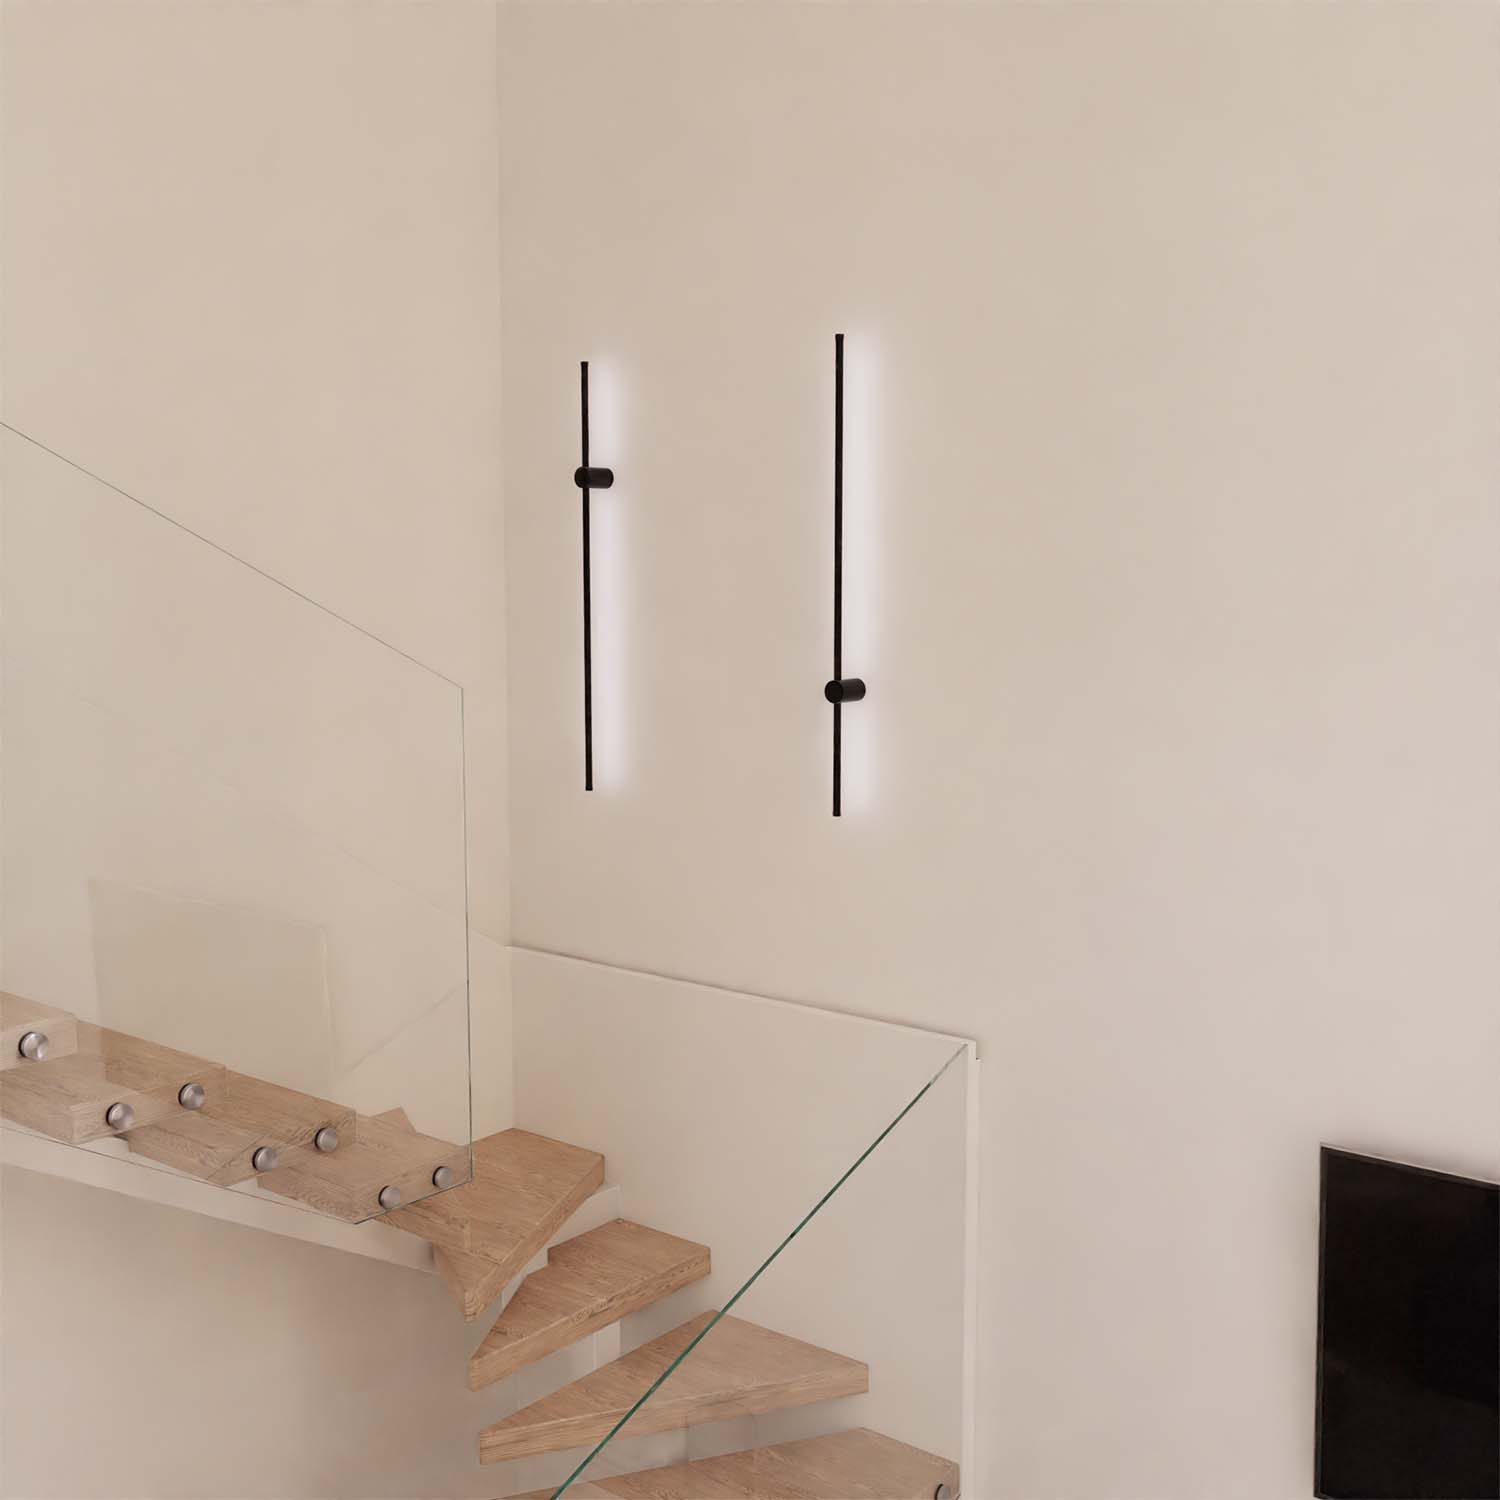 B-goods: Avenos designer wall lamp